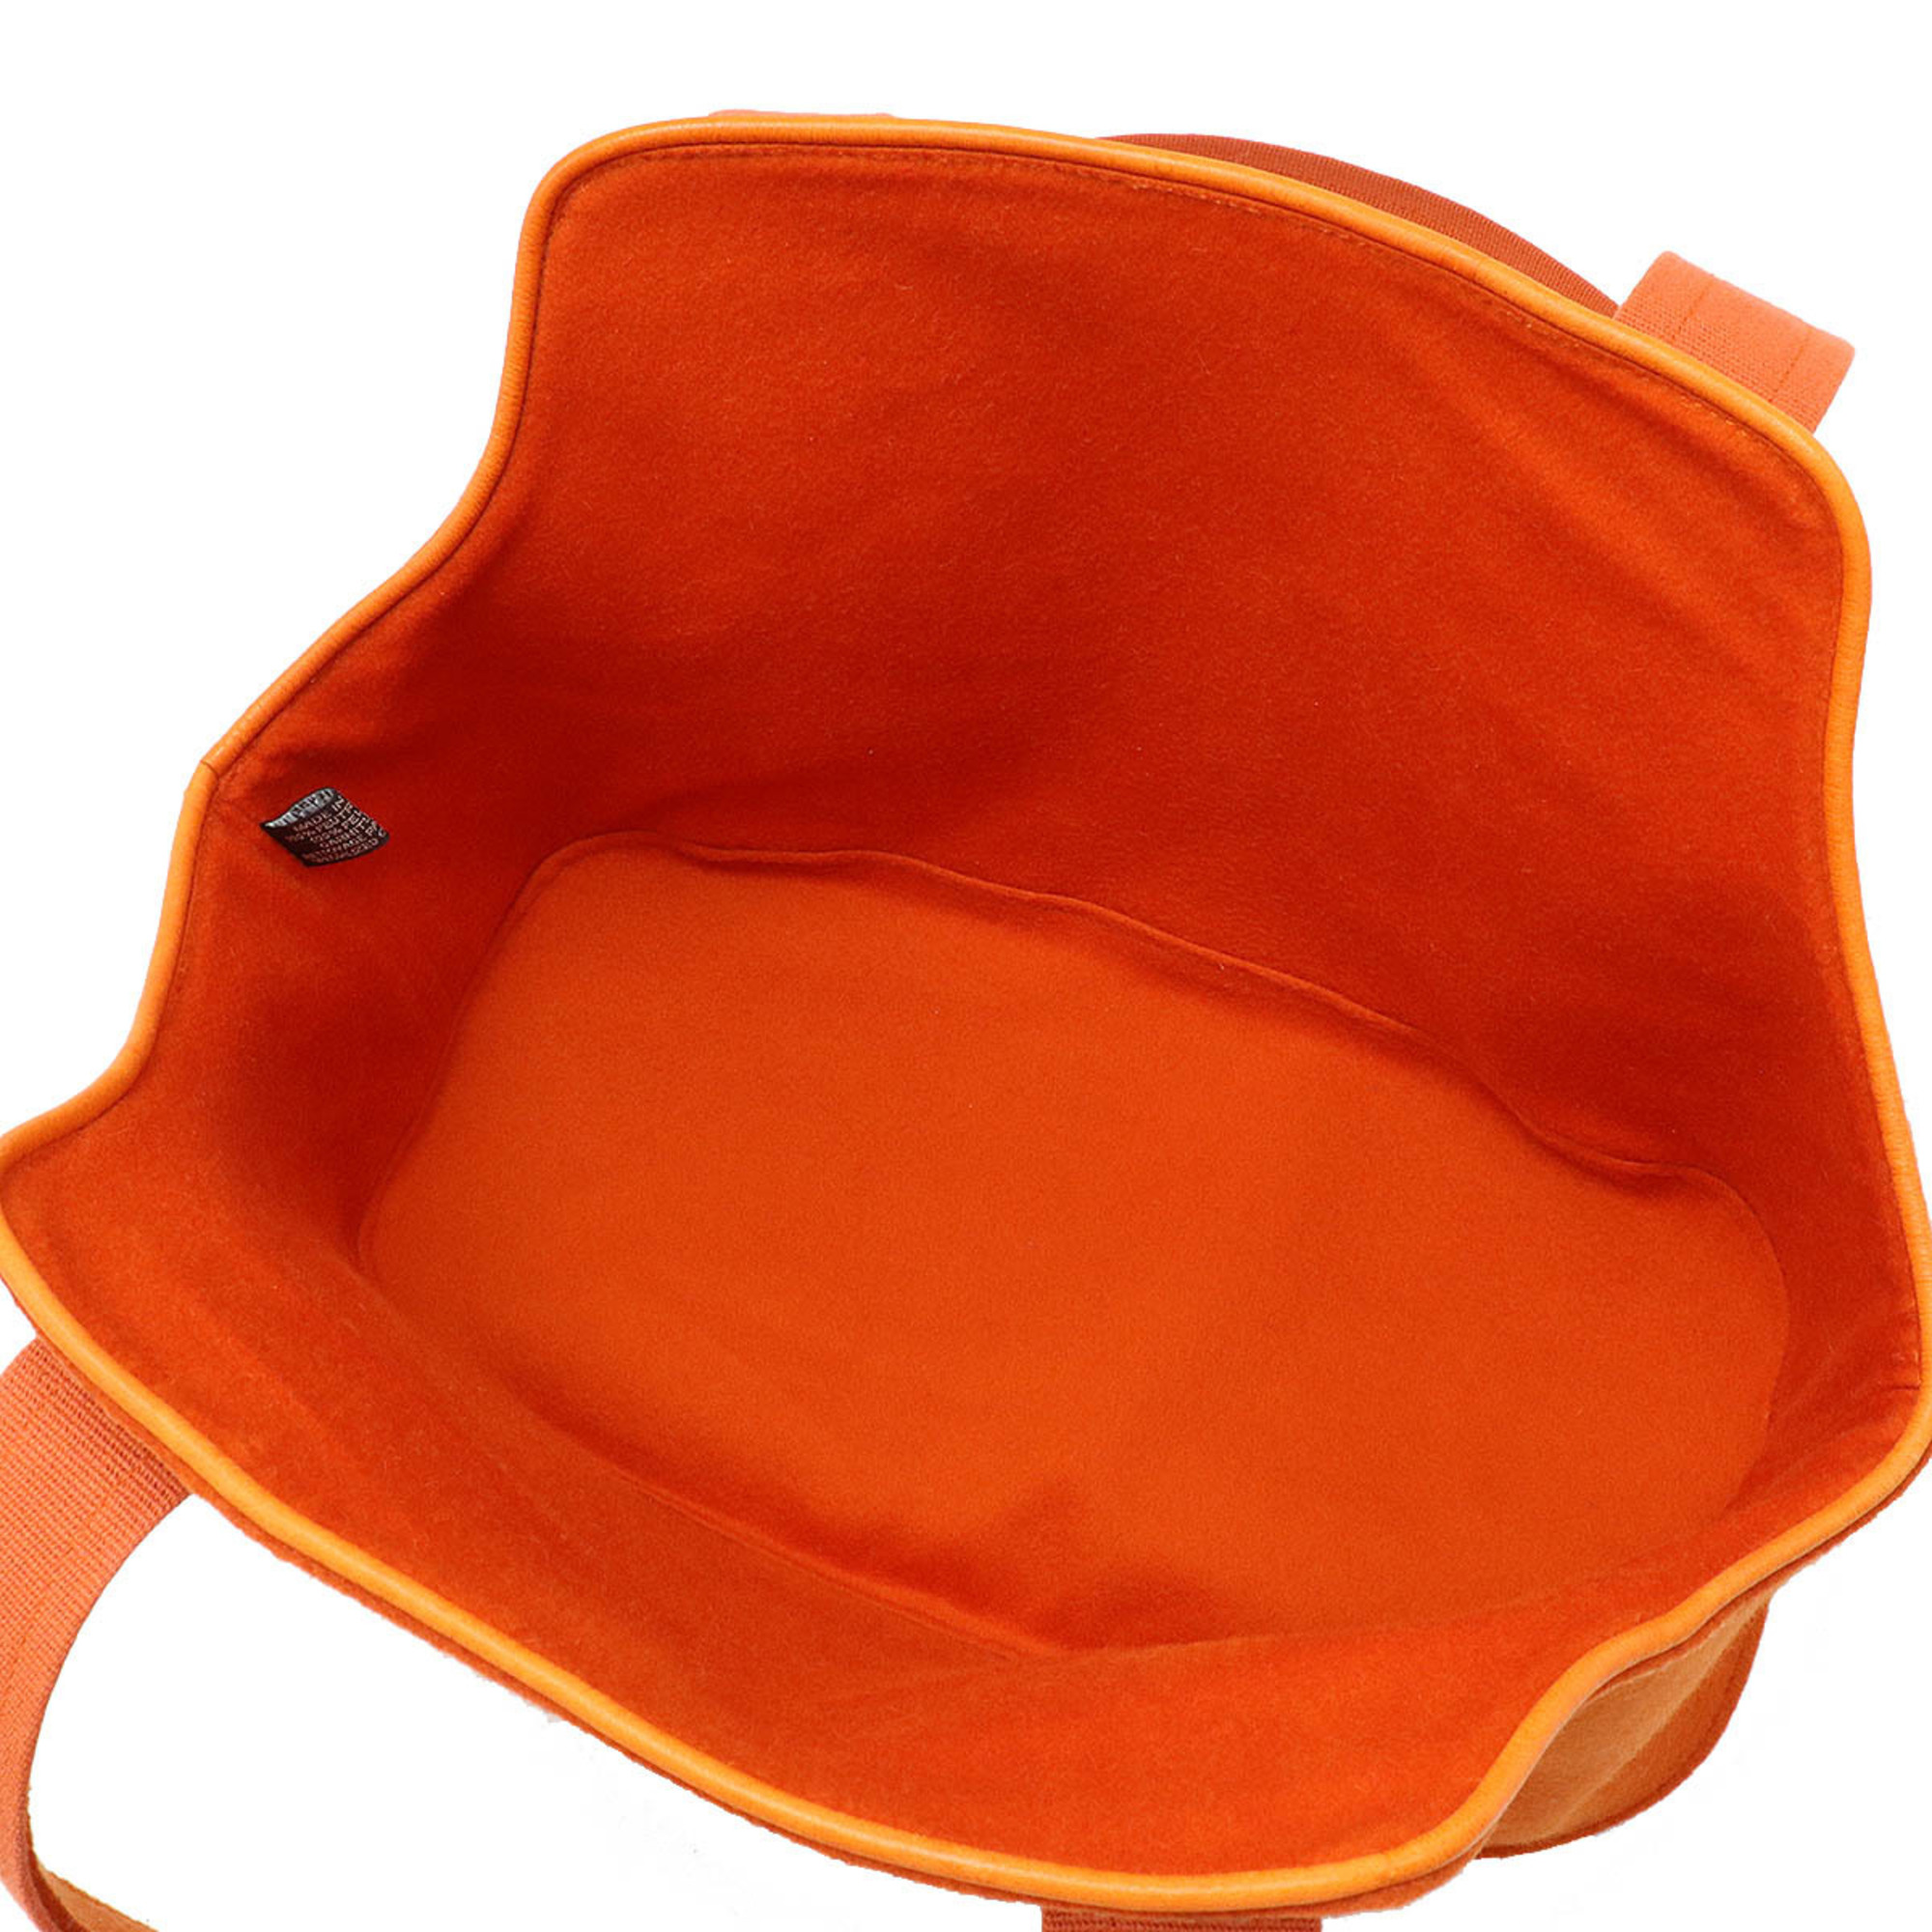 HERMES Patapon dog carrier shoulder bag felt leather orange